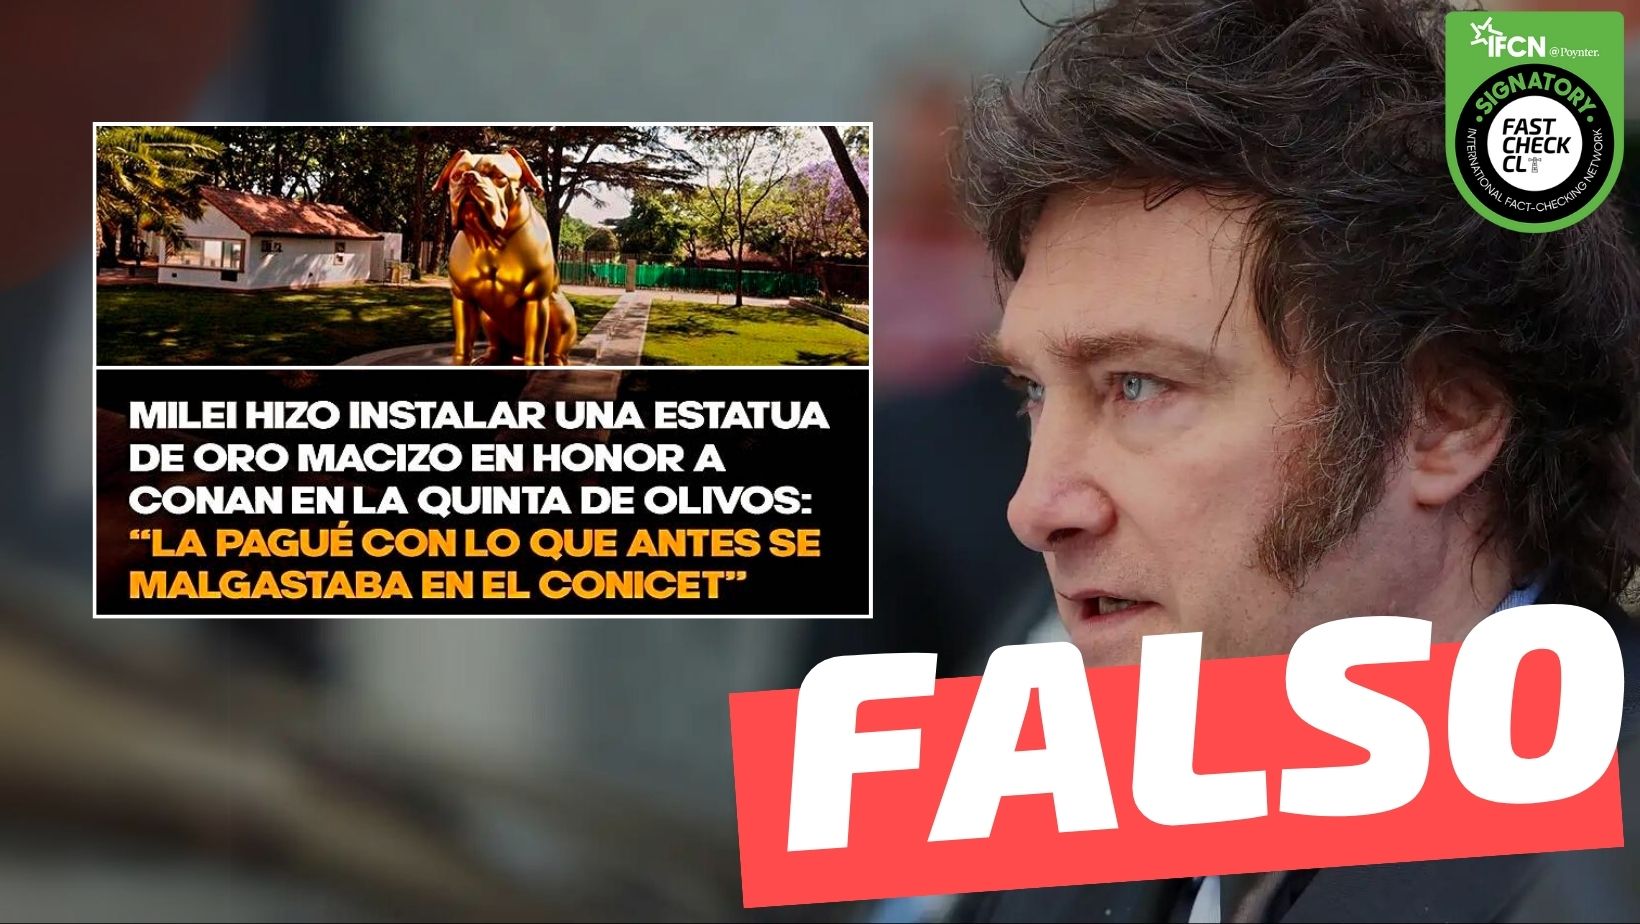 You are currently viewing (Imagen) “Milei hizo instalar una estatua de oro macizo en honor a (su perro) Conan”: #Falso